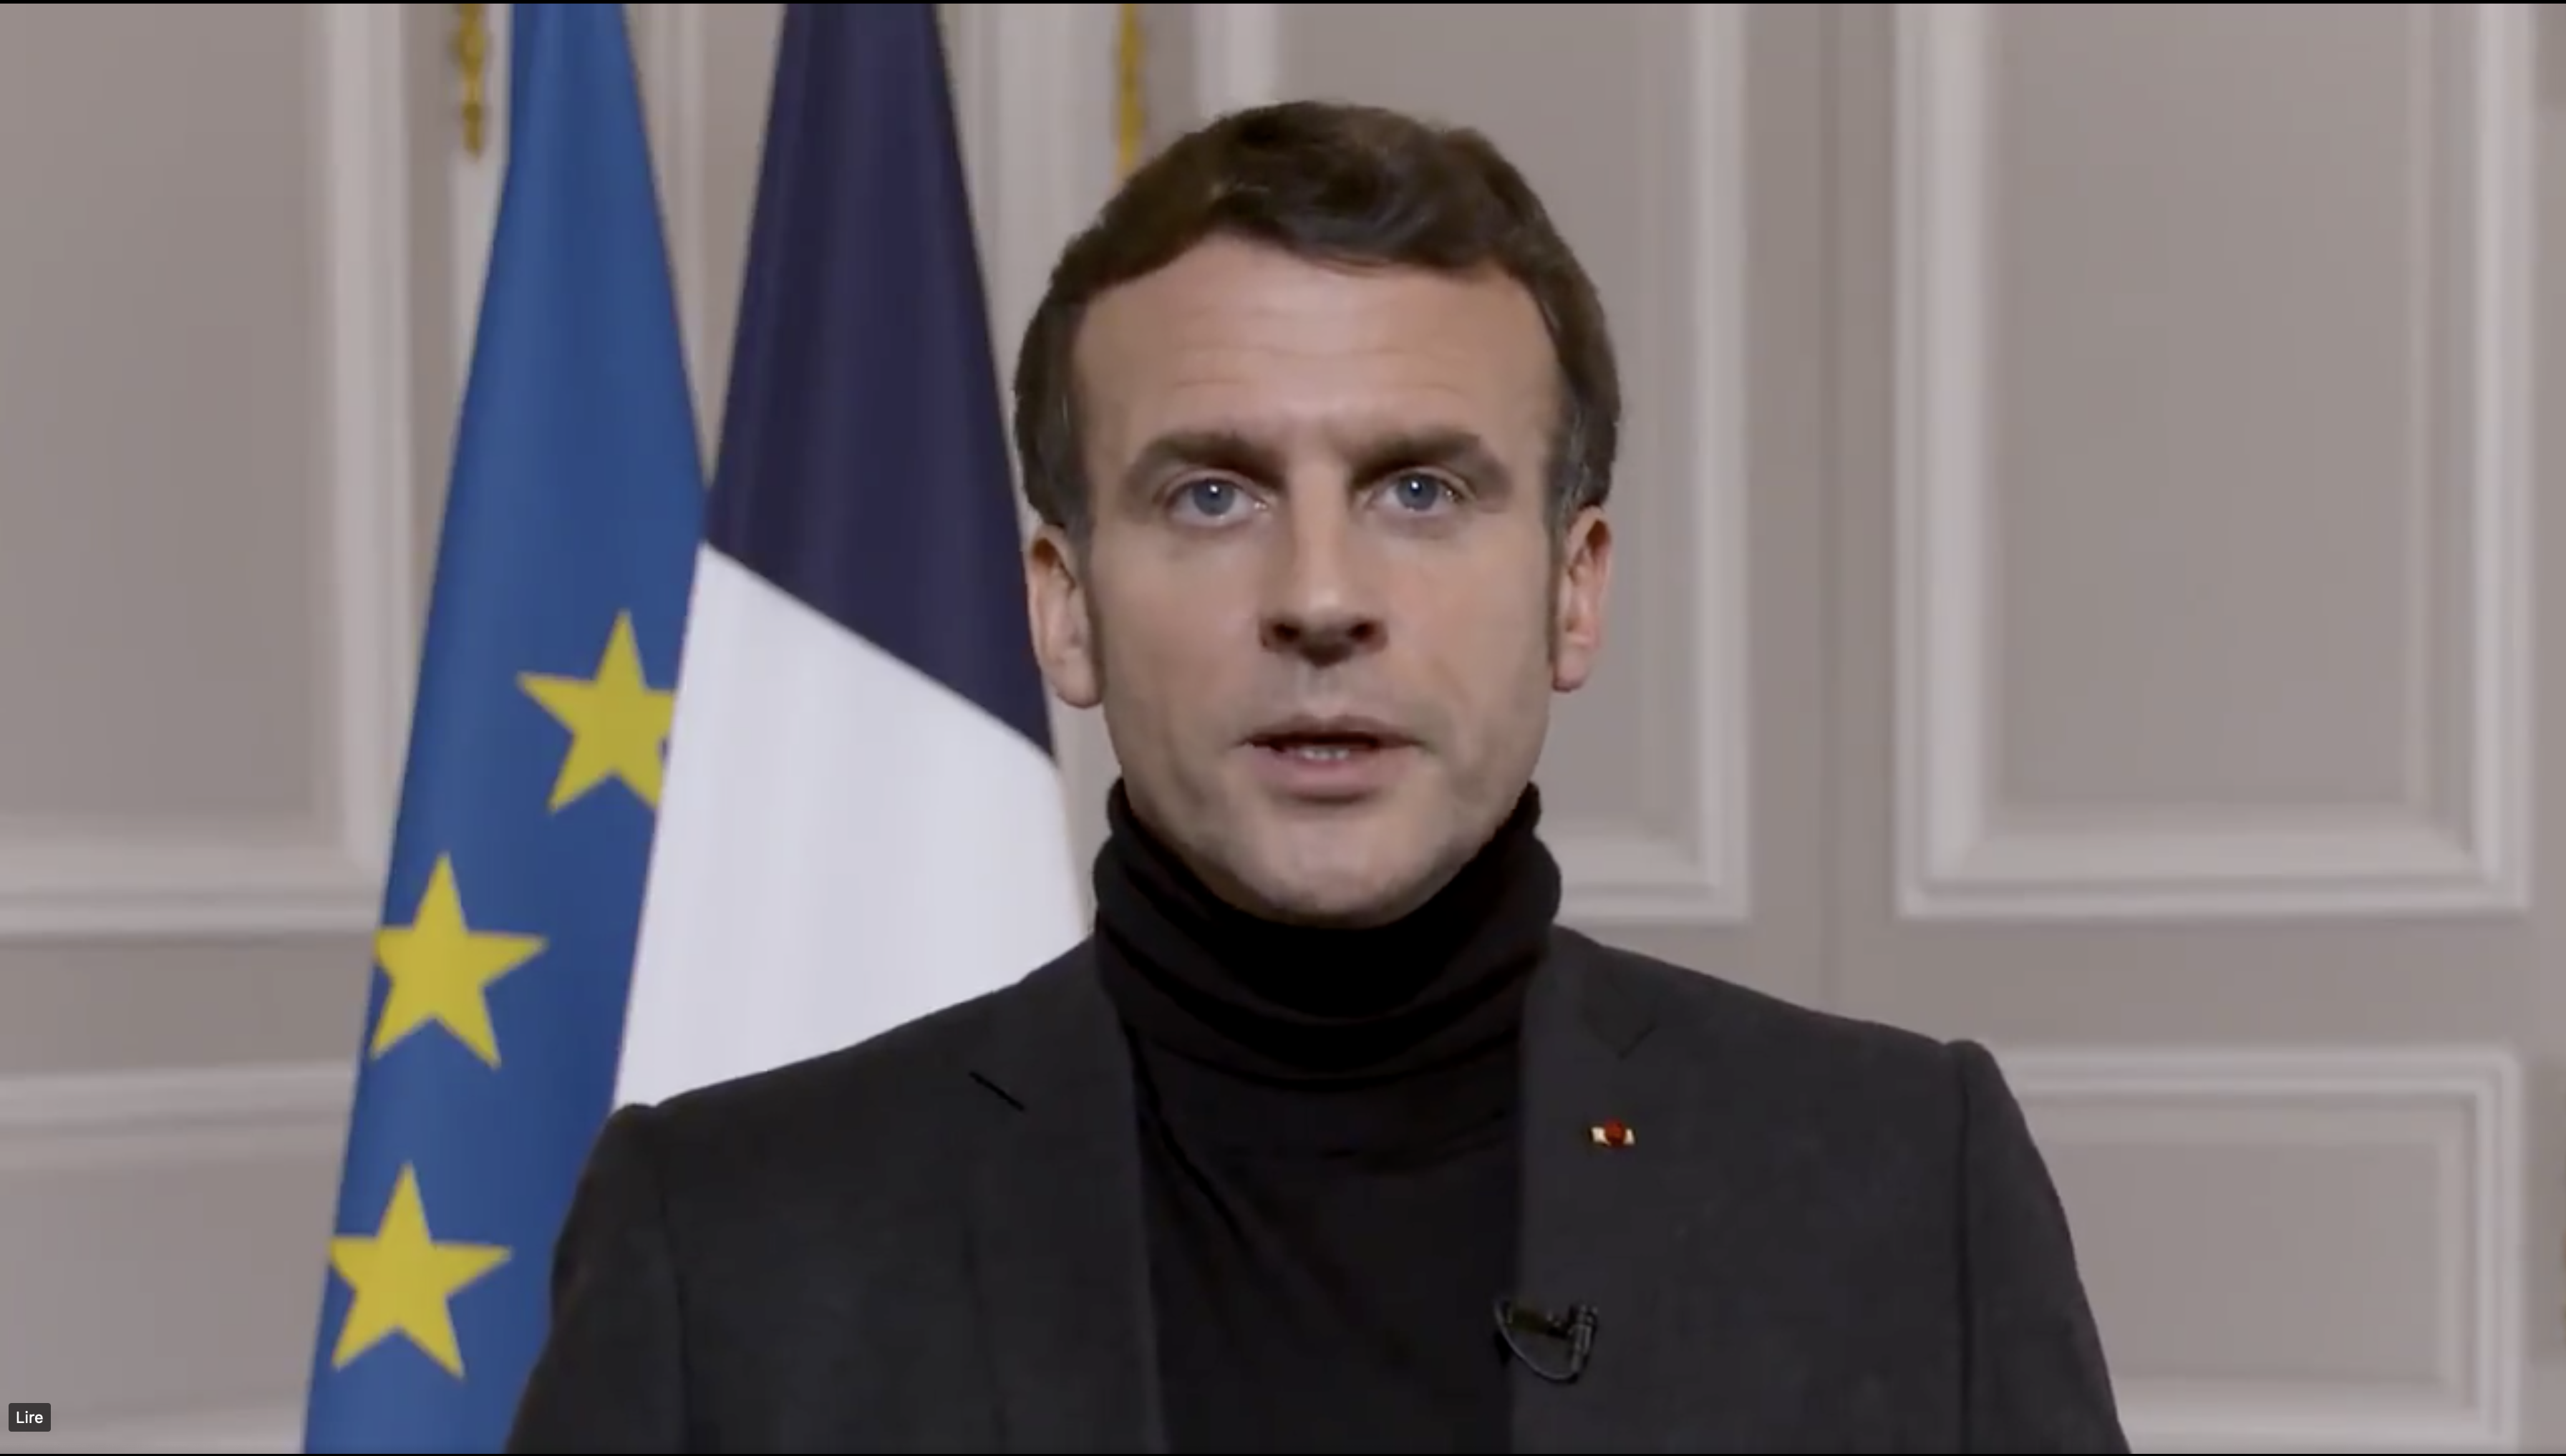 Emmanuel Macron s'est exprimé pour soutenir les victimes sur les réseaux sociaux. Crédit : Capture d'écran de la vidéo d'Emmanuel Macron